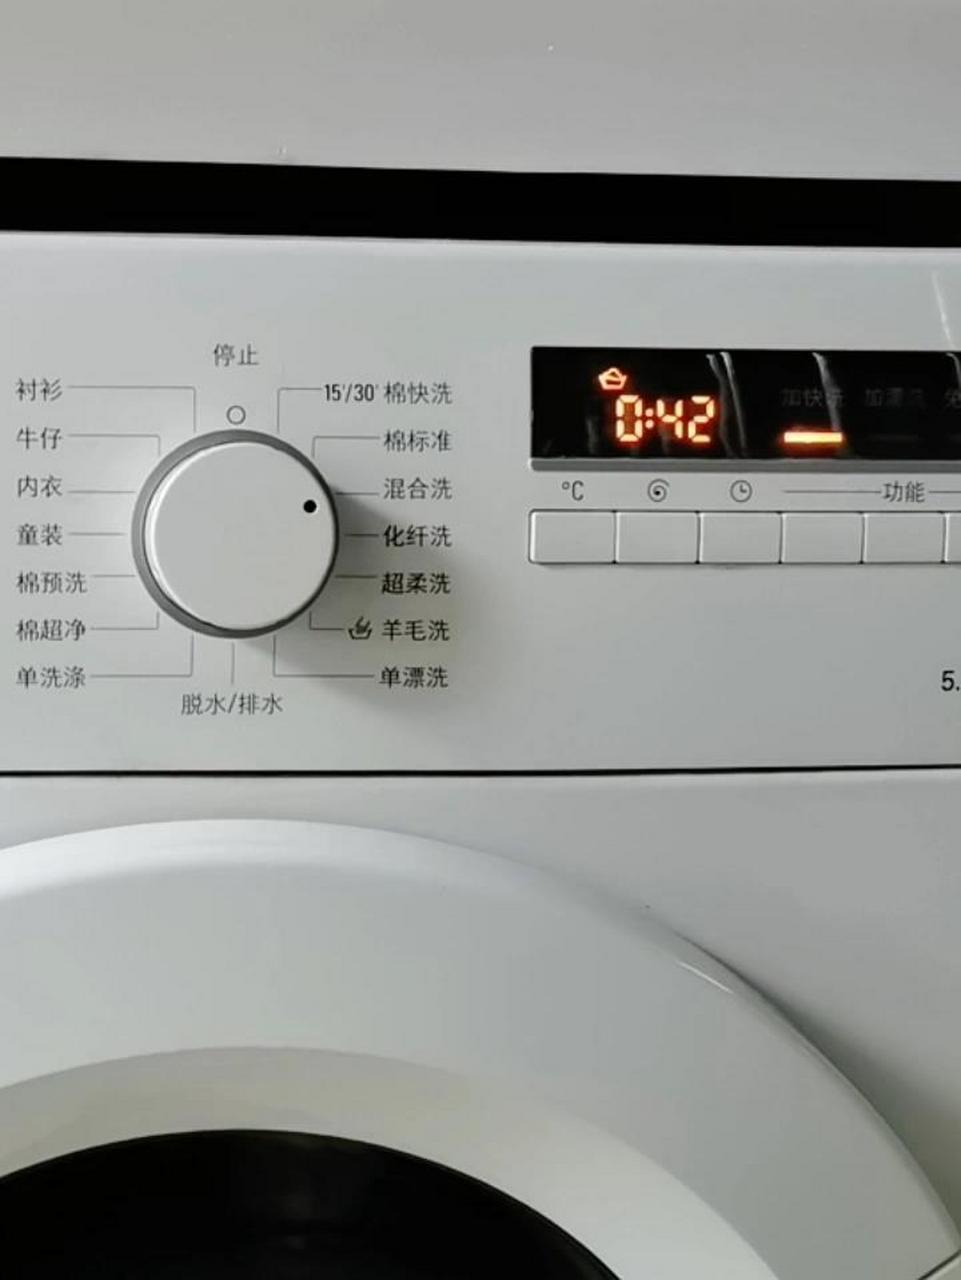 西门子洗衣机烘干标志图片